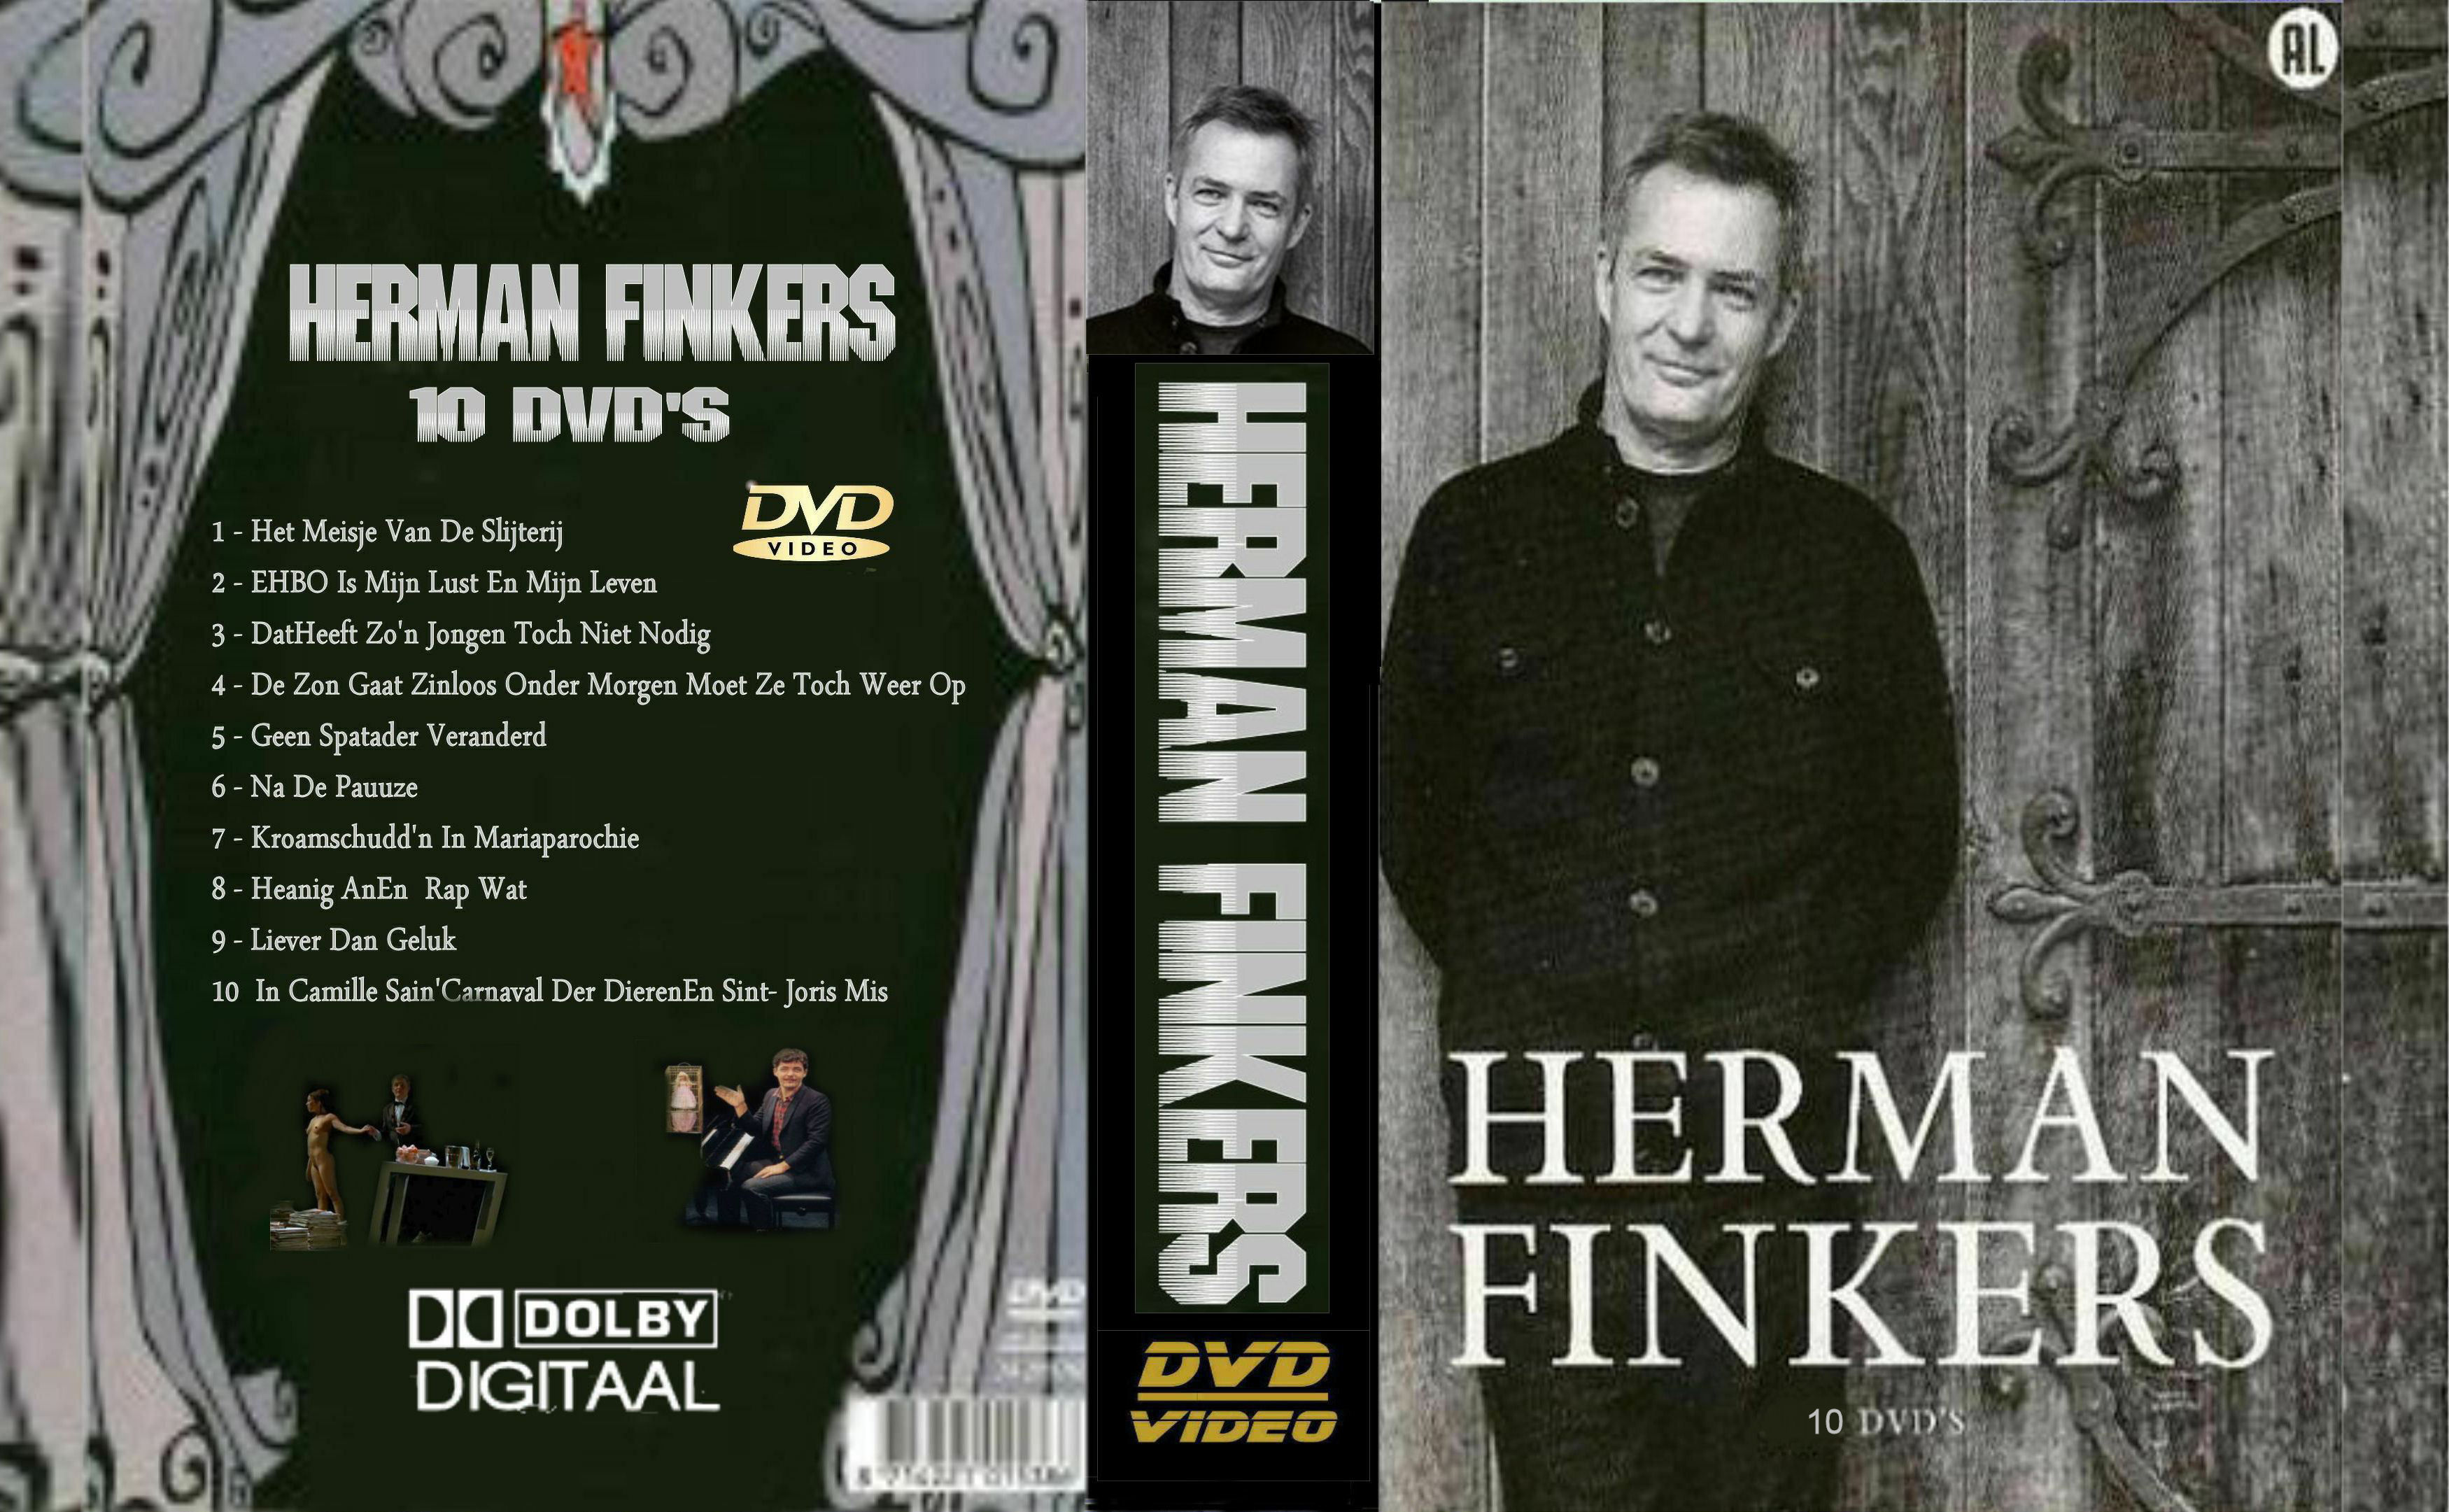 REPOST Herman Finkers Collectie Dvd 10 Finale